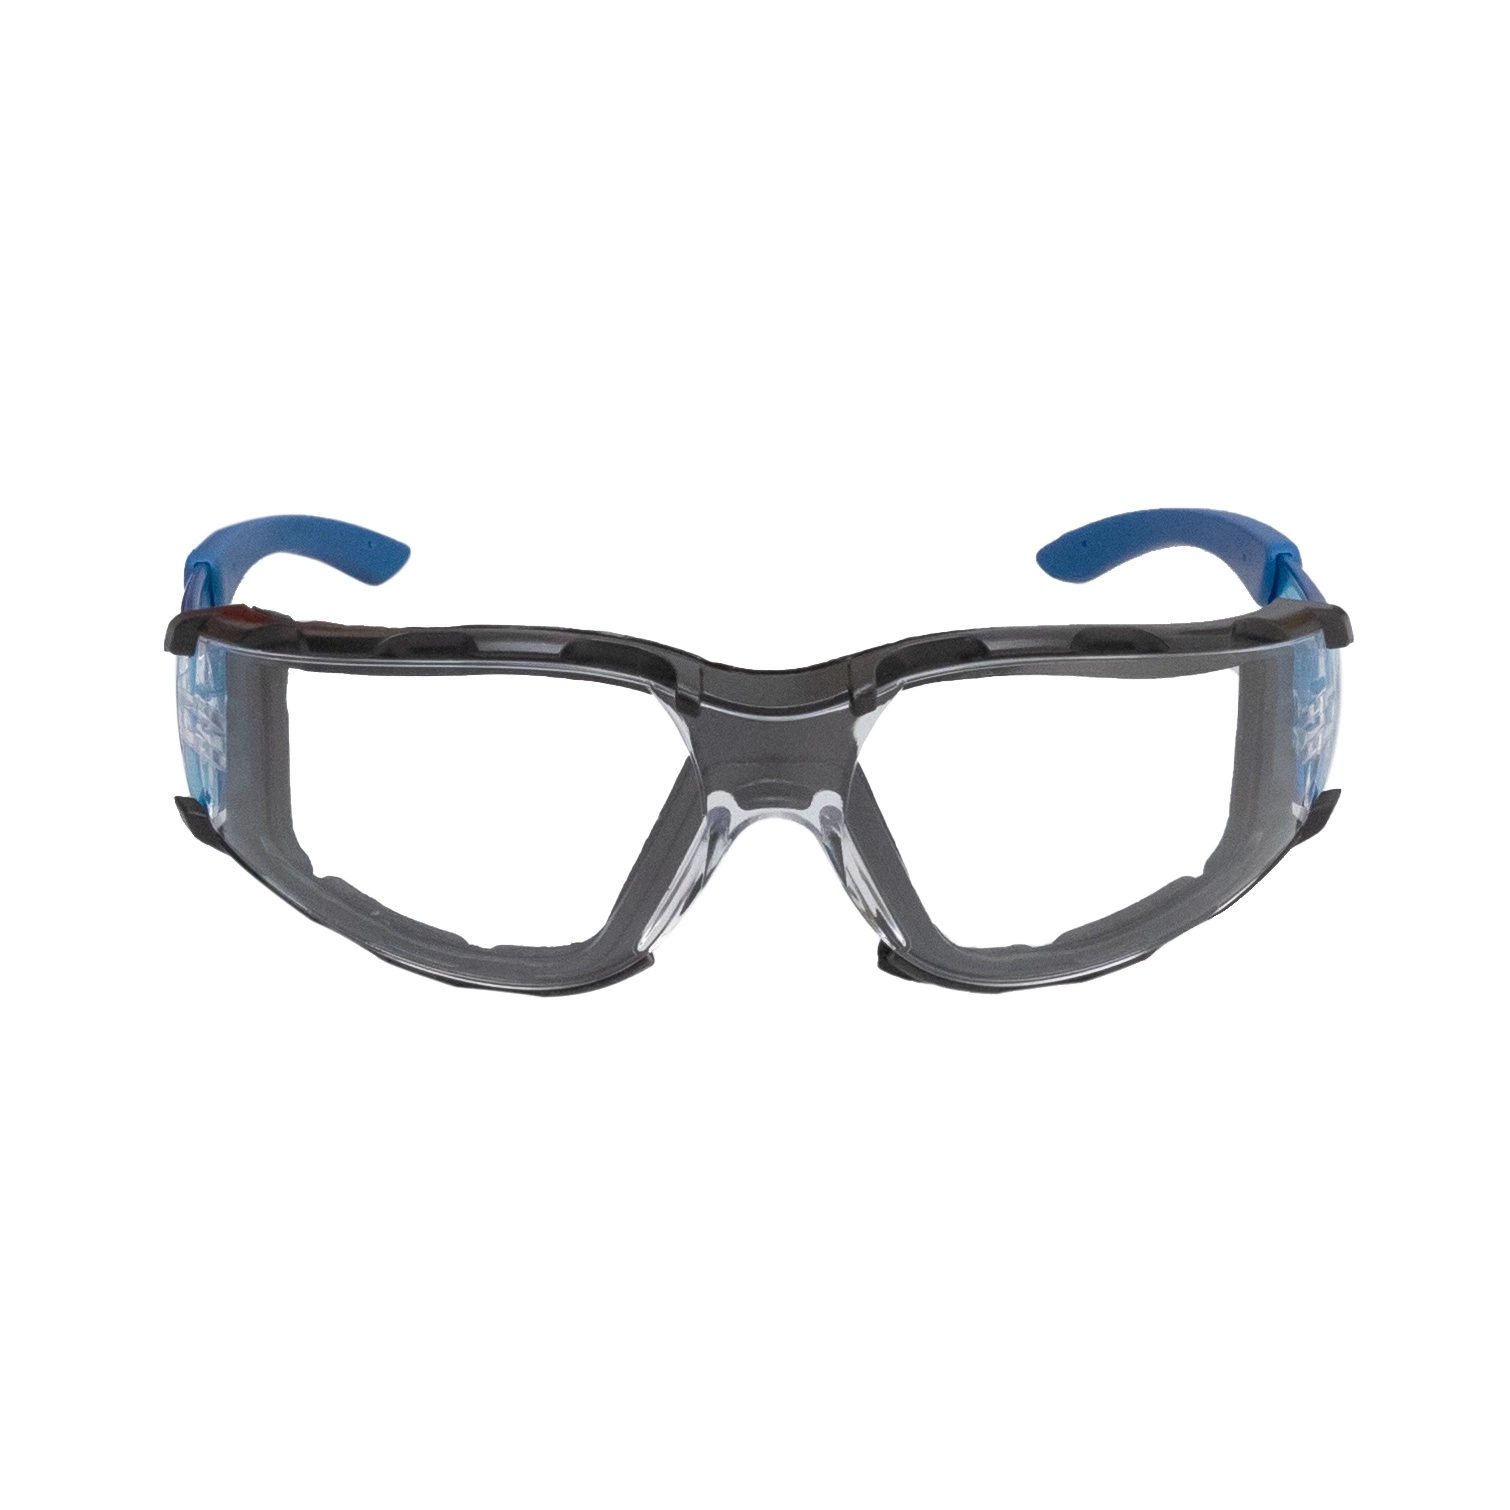 نظارات واقية من النظارات الواقية من العدسات الشفافة ذات النمط الشائع - معدات الحماية الشخصية - نظارات الحماية